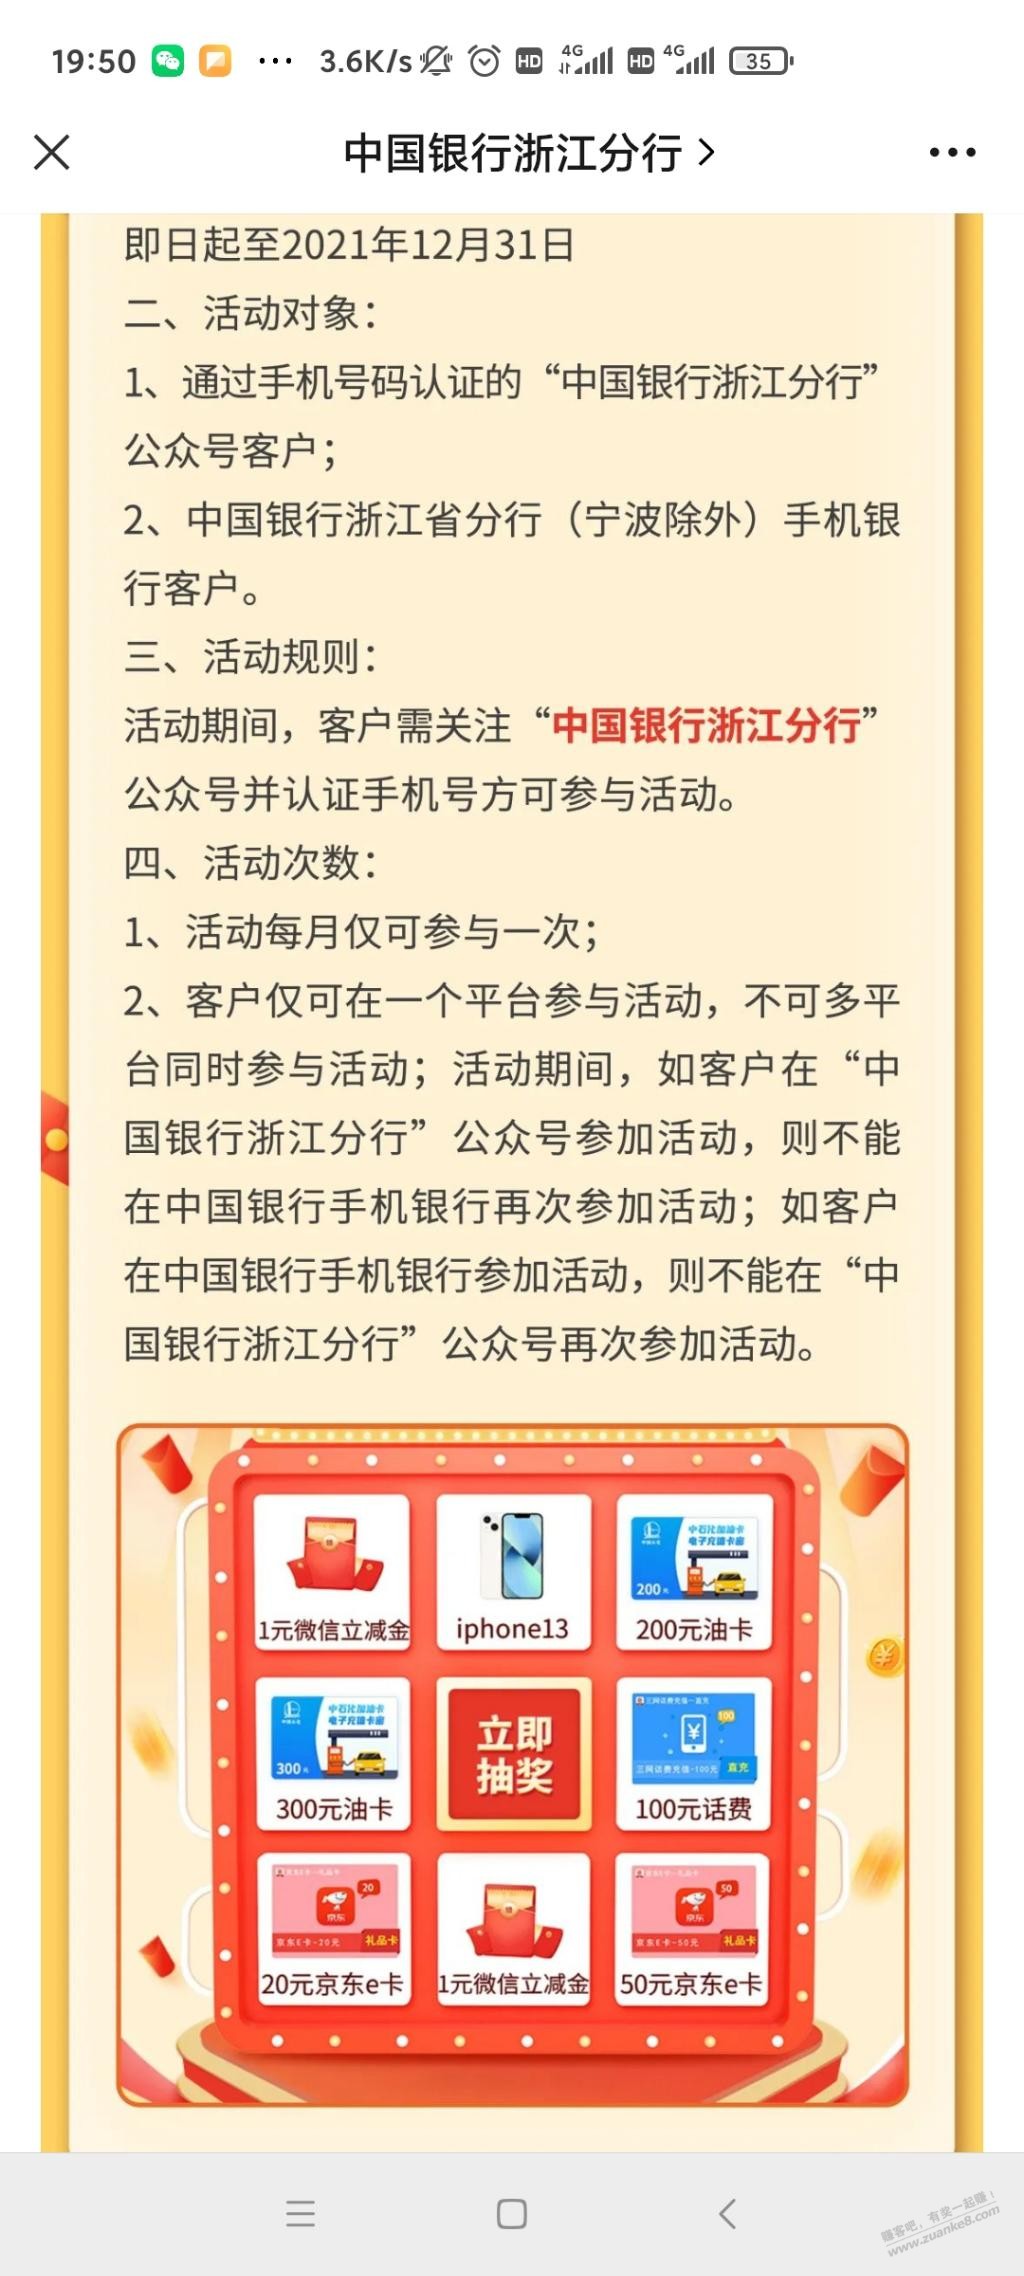 中国银行V.x抽奖-惠小助(52huixz.com)